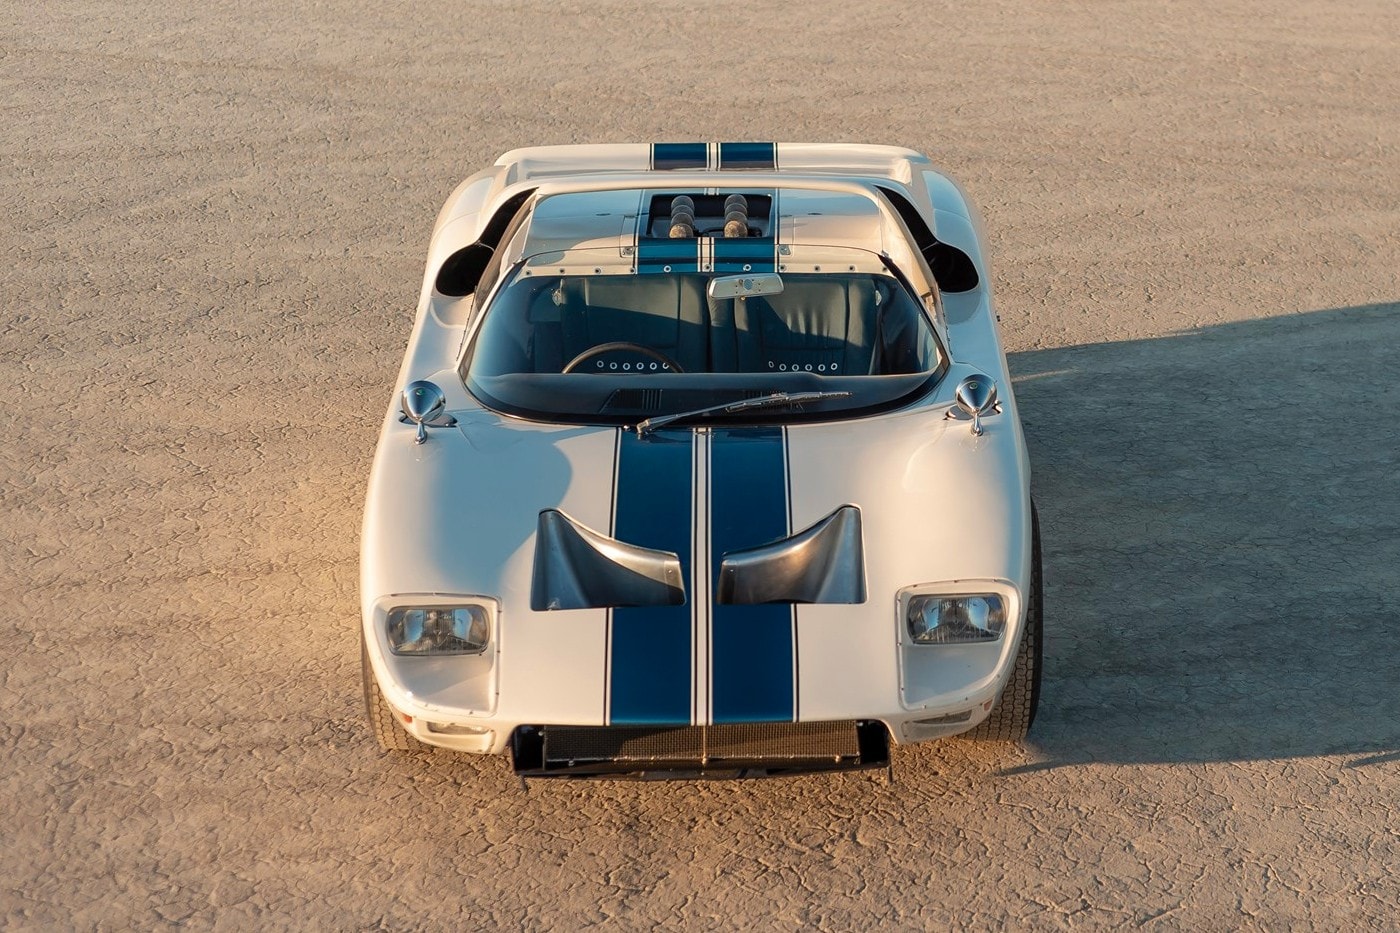 全球唯一 1965 年樣式 Ford GT40 Roadster 原型車即將展開拍賣